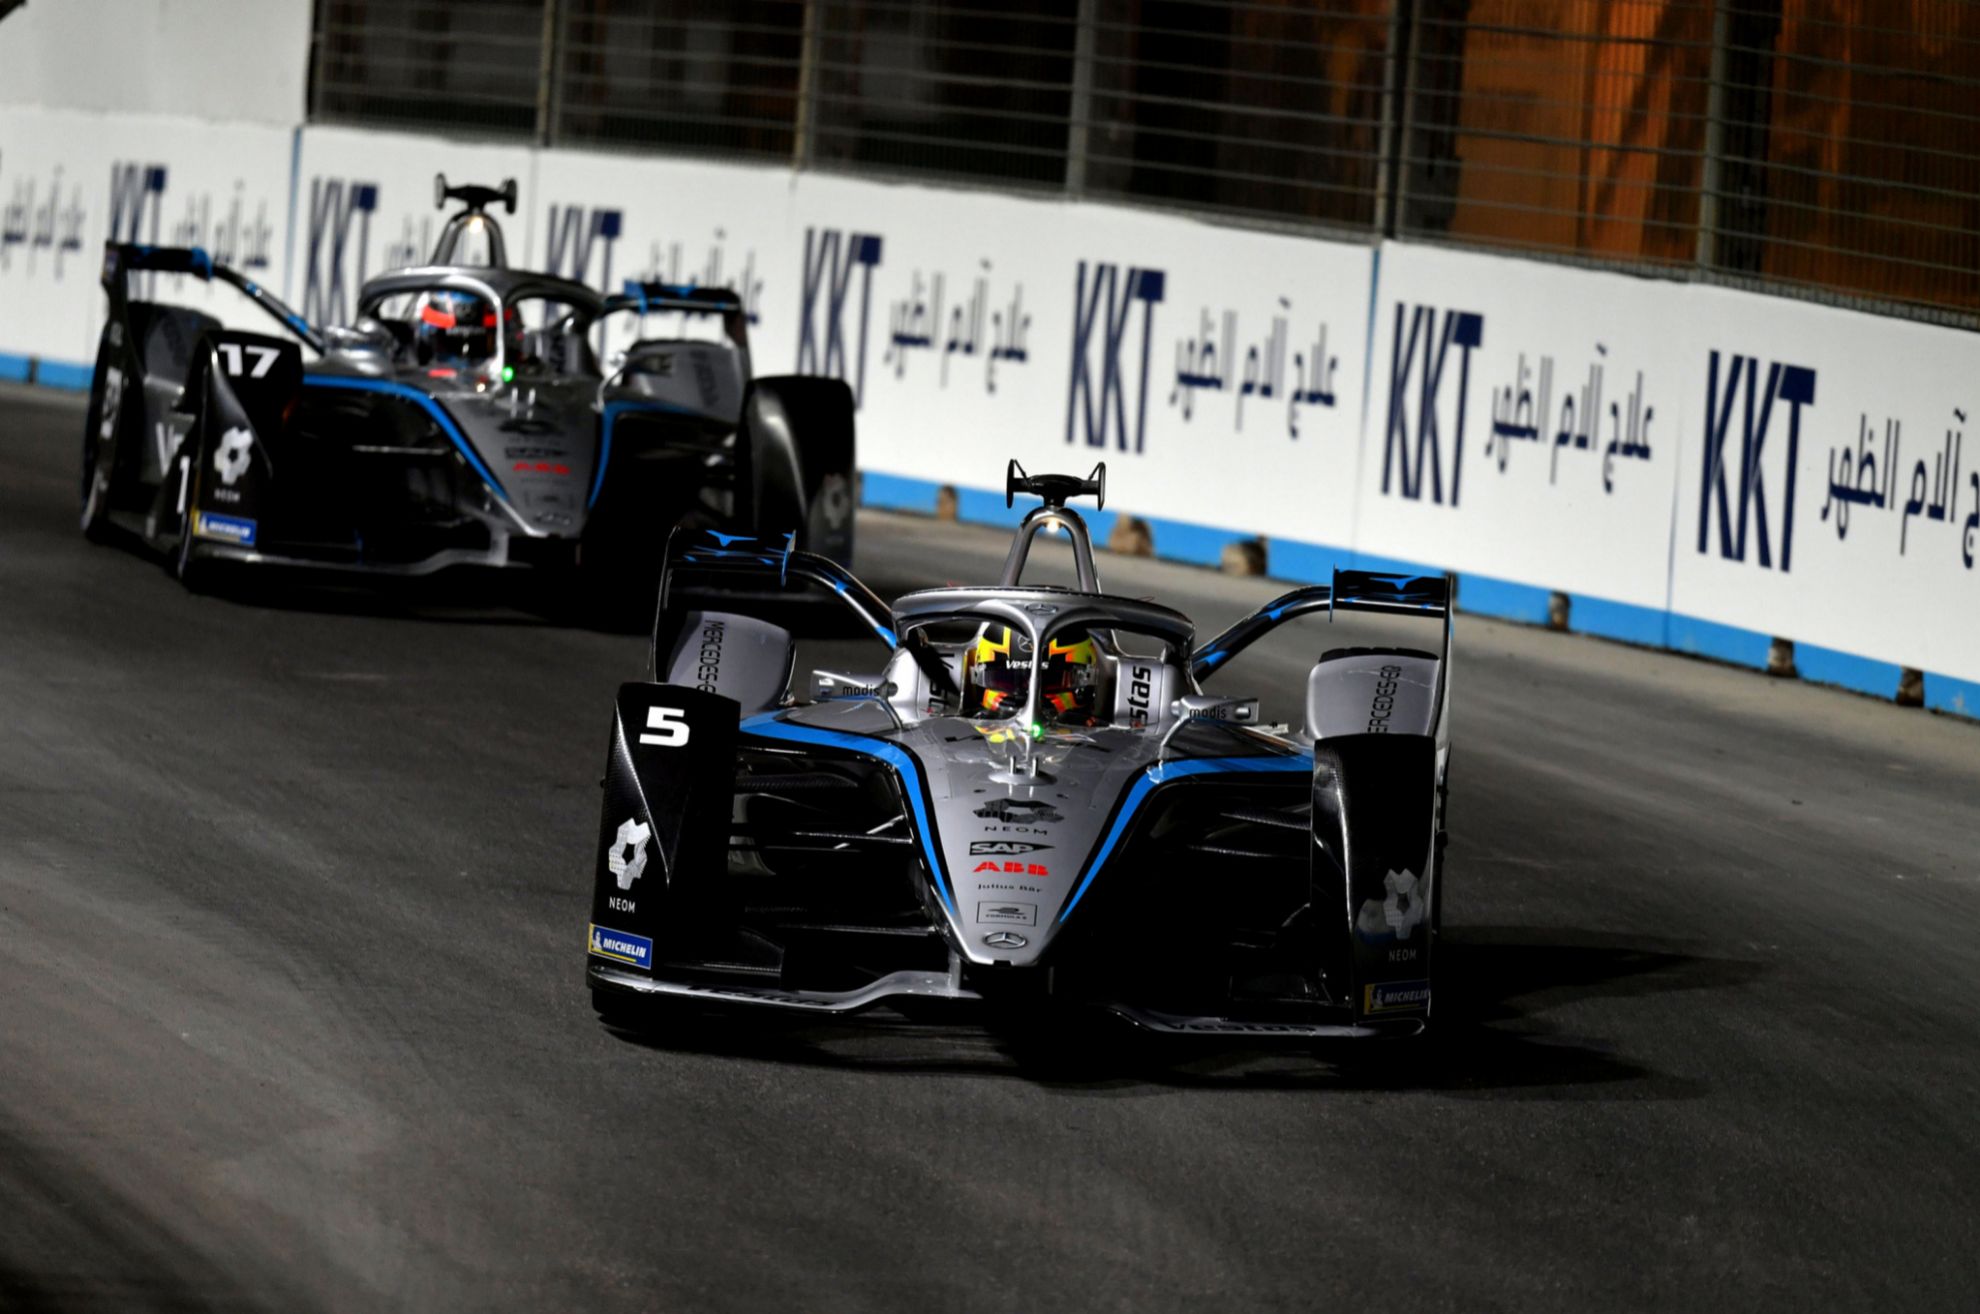 De Vries - ganador - mercedes eq - formula e 2022 - temporada 8 - diriyah e-prix - arabia saudi - monoplazas electricos